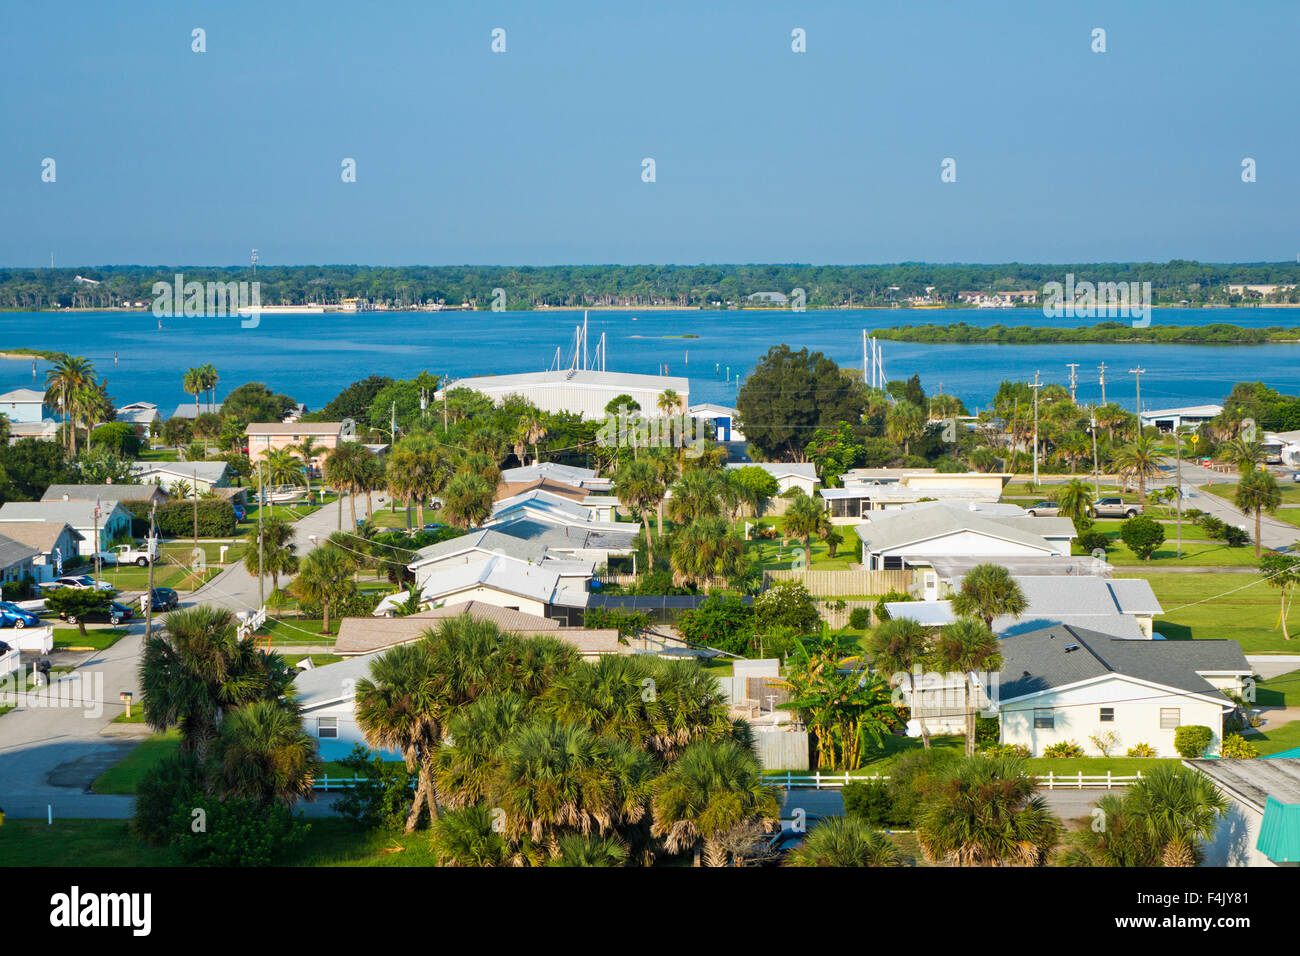 Homes & waterways on Daytona Beach Shores Stock Photo